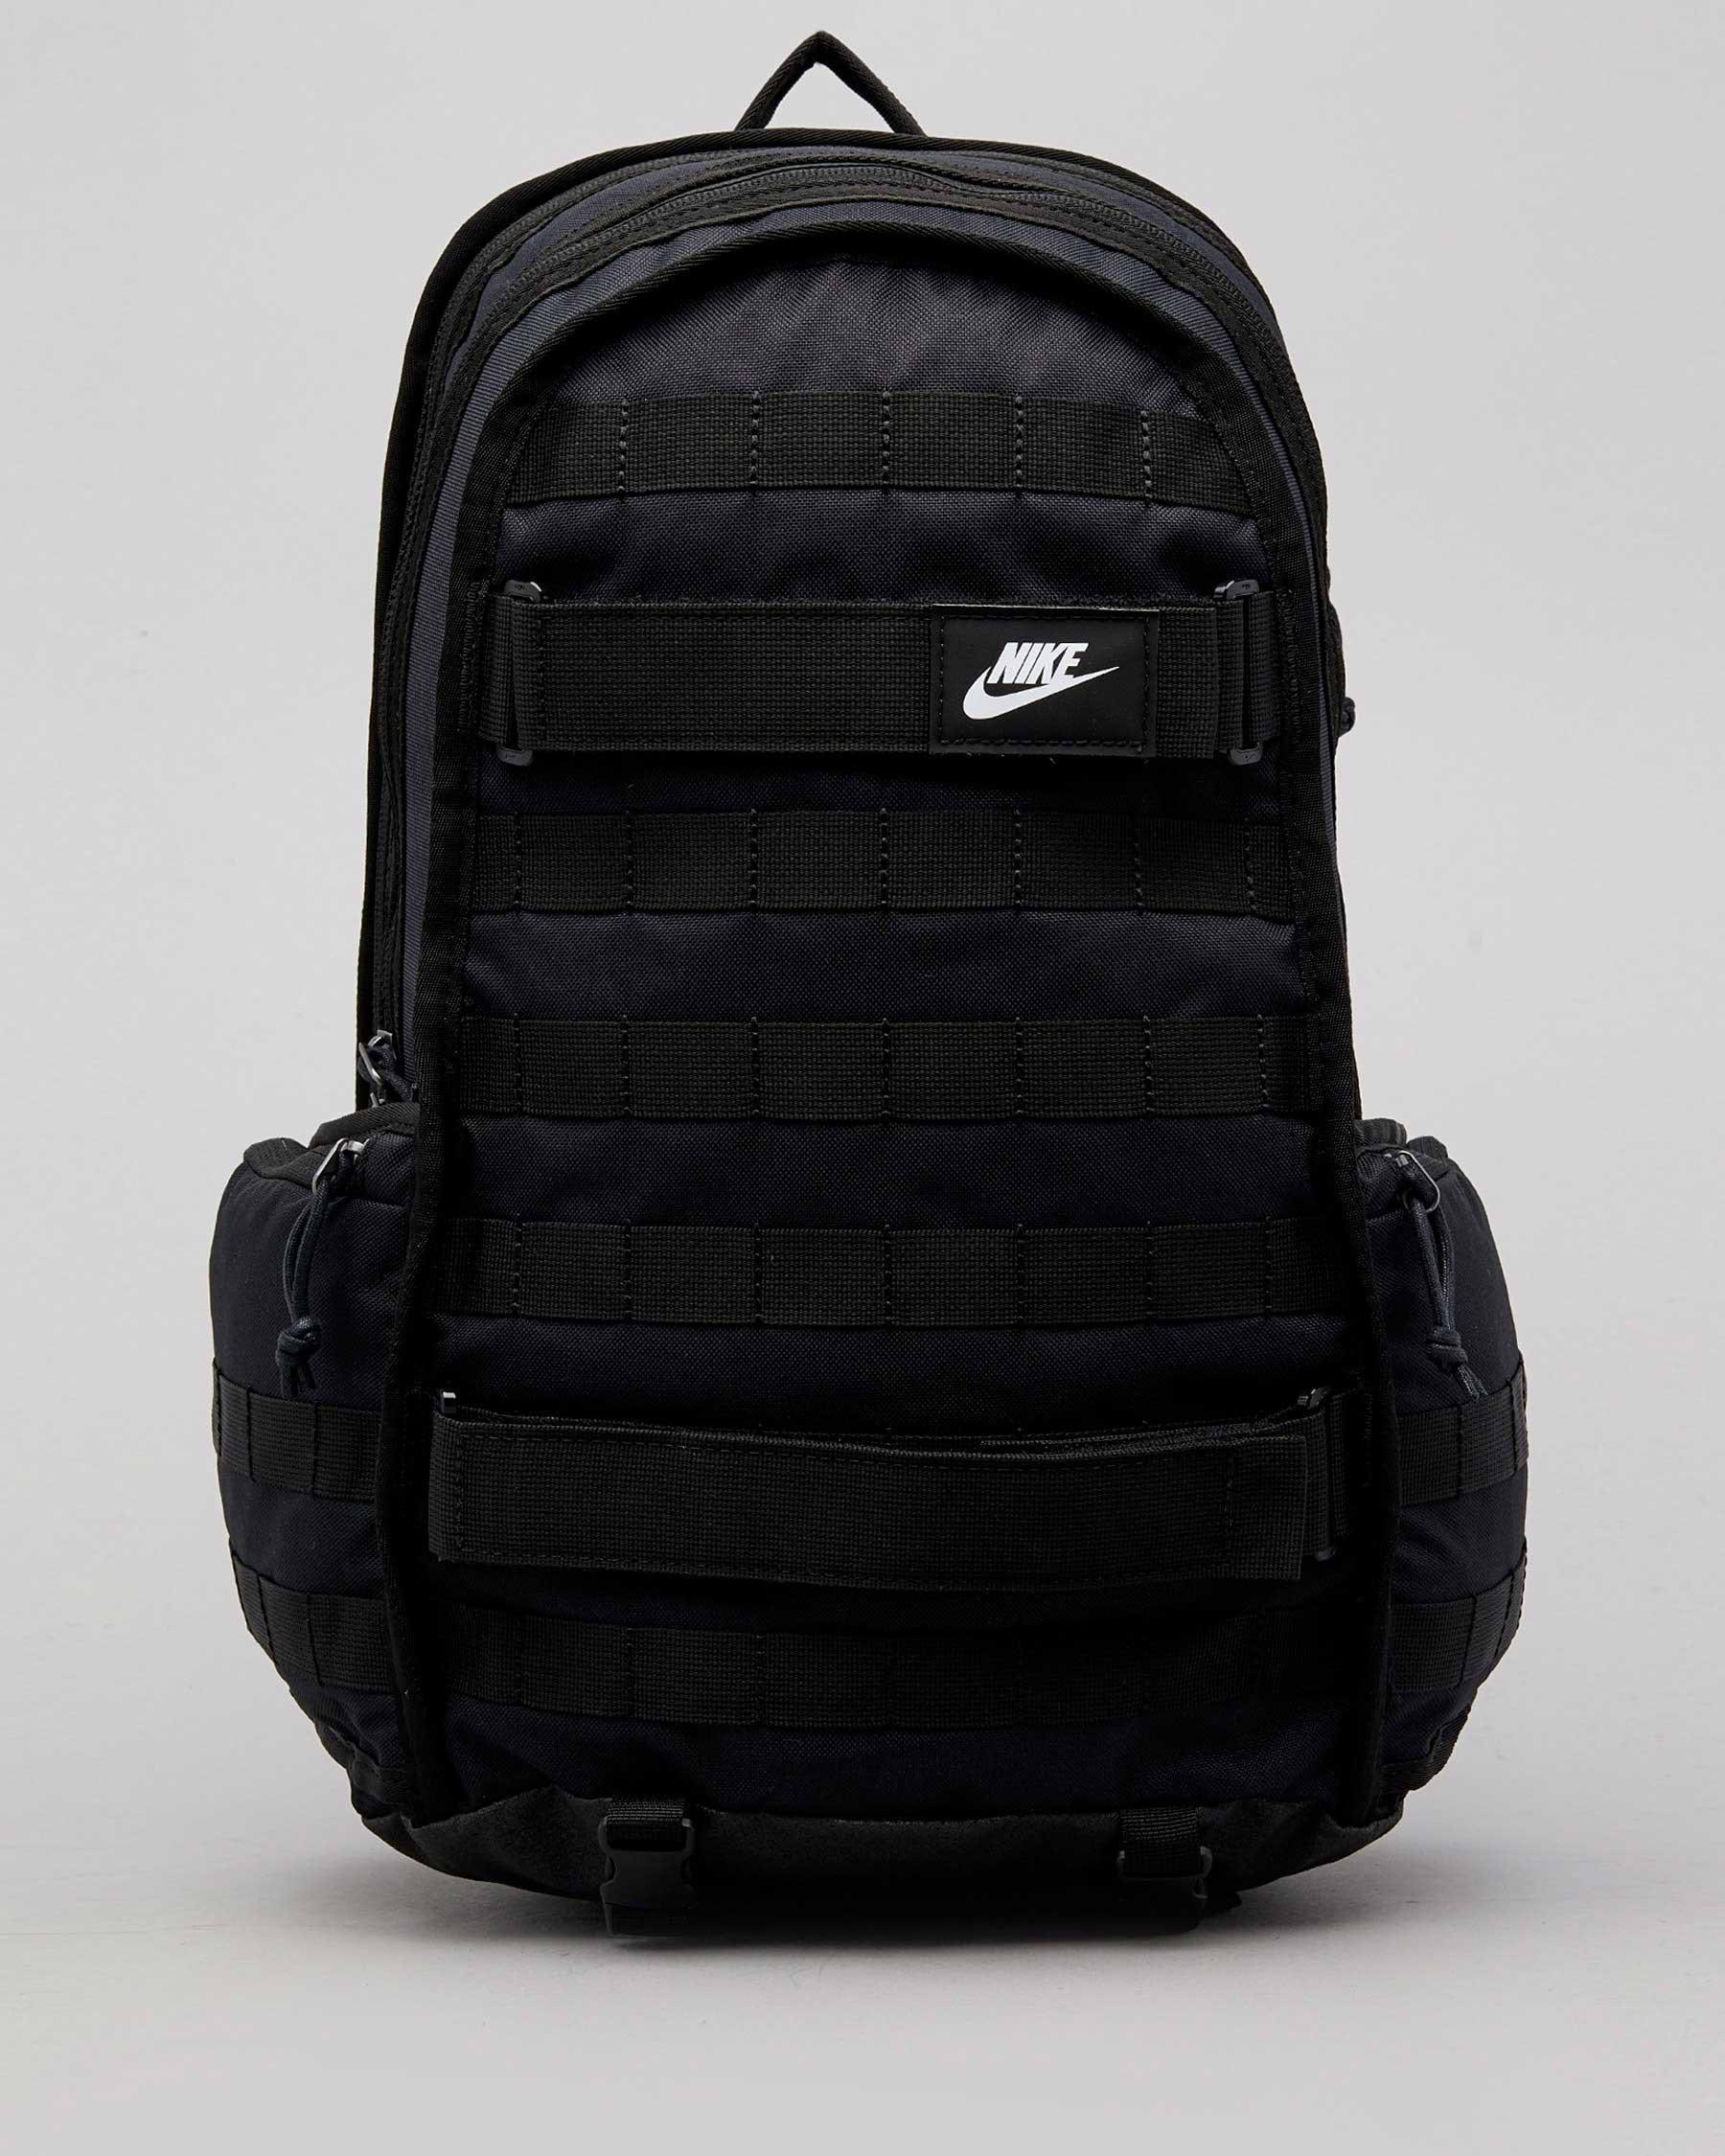 Nike Sportswear RPM Backpack In Black/black/white | City Beach Australia